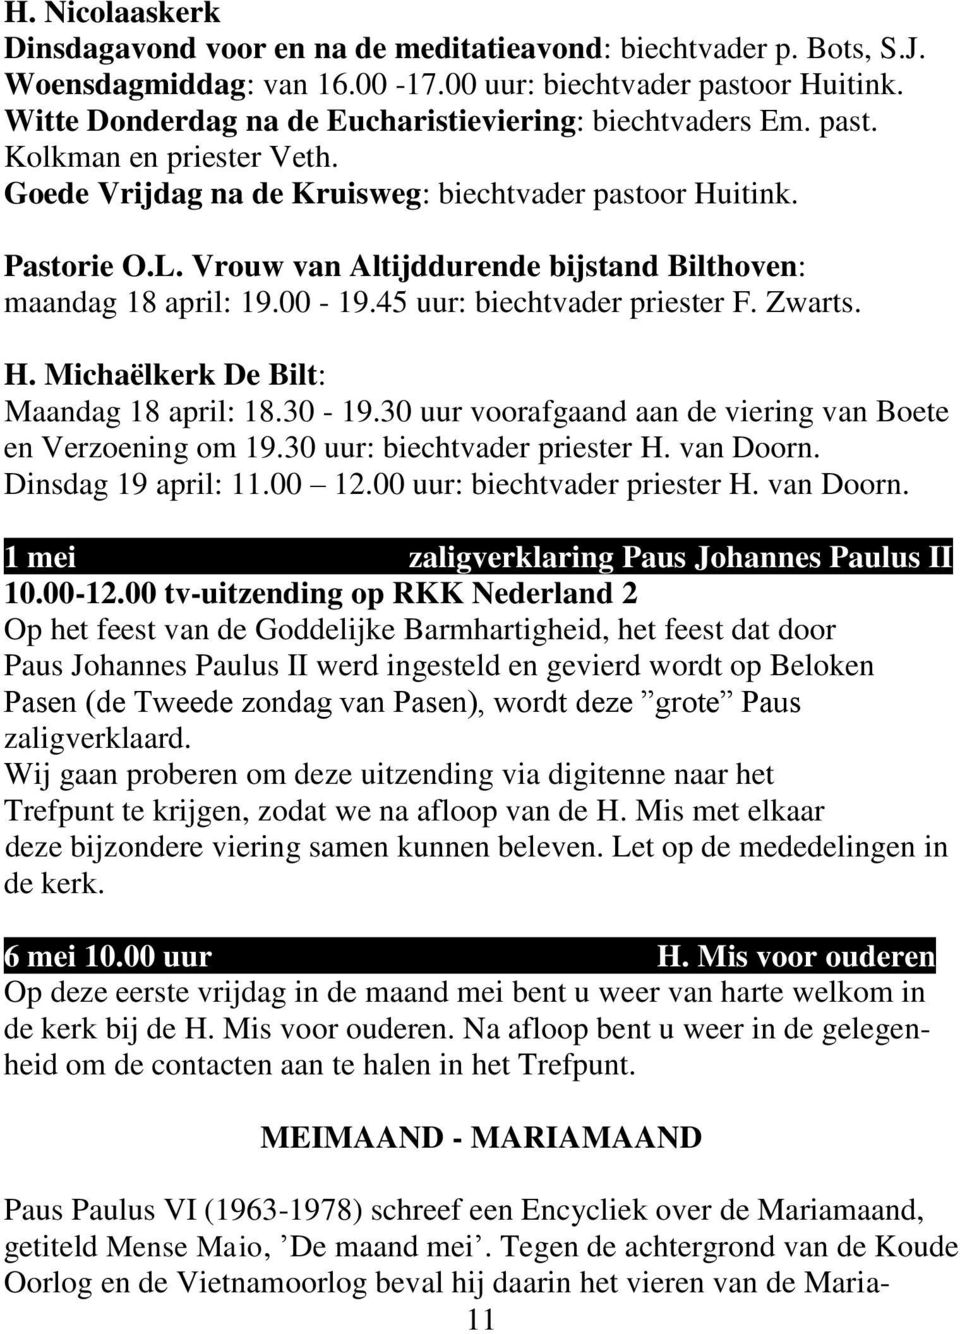 Vrouw van Altijddurende bijstand Bilthoven: maandag 18 april: 19.00-19.45 uur: biechtvader priester F. Zwarts. H. Michaëlkerk De Bilt: Maandag 18 april: 18.30-19.